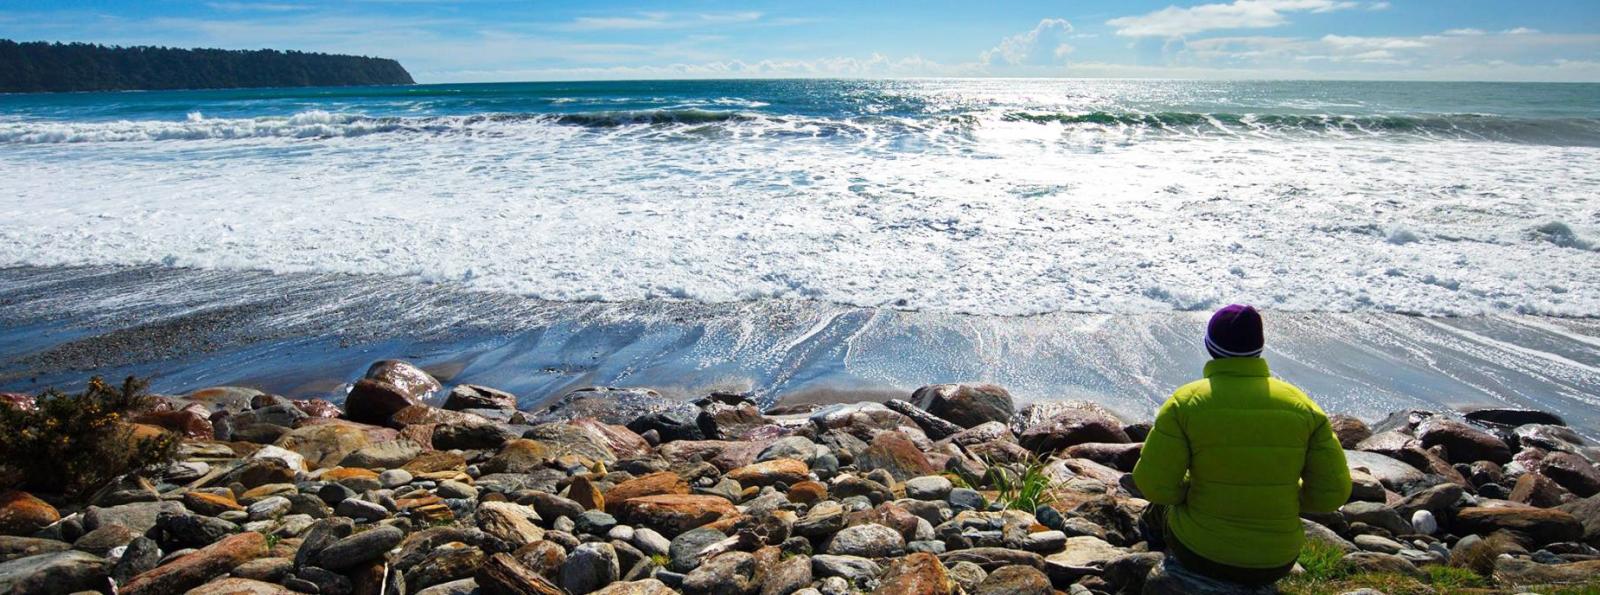 waves on New Zealand's west coast